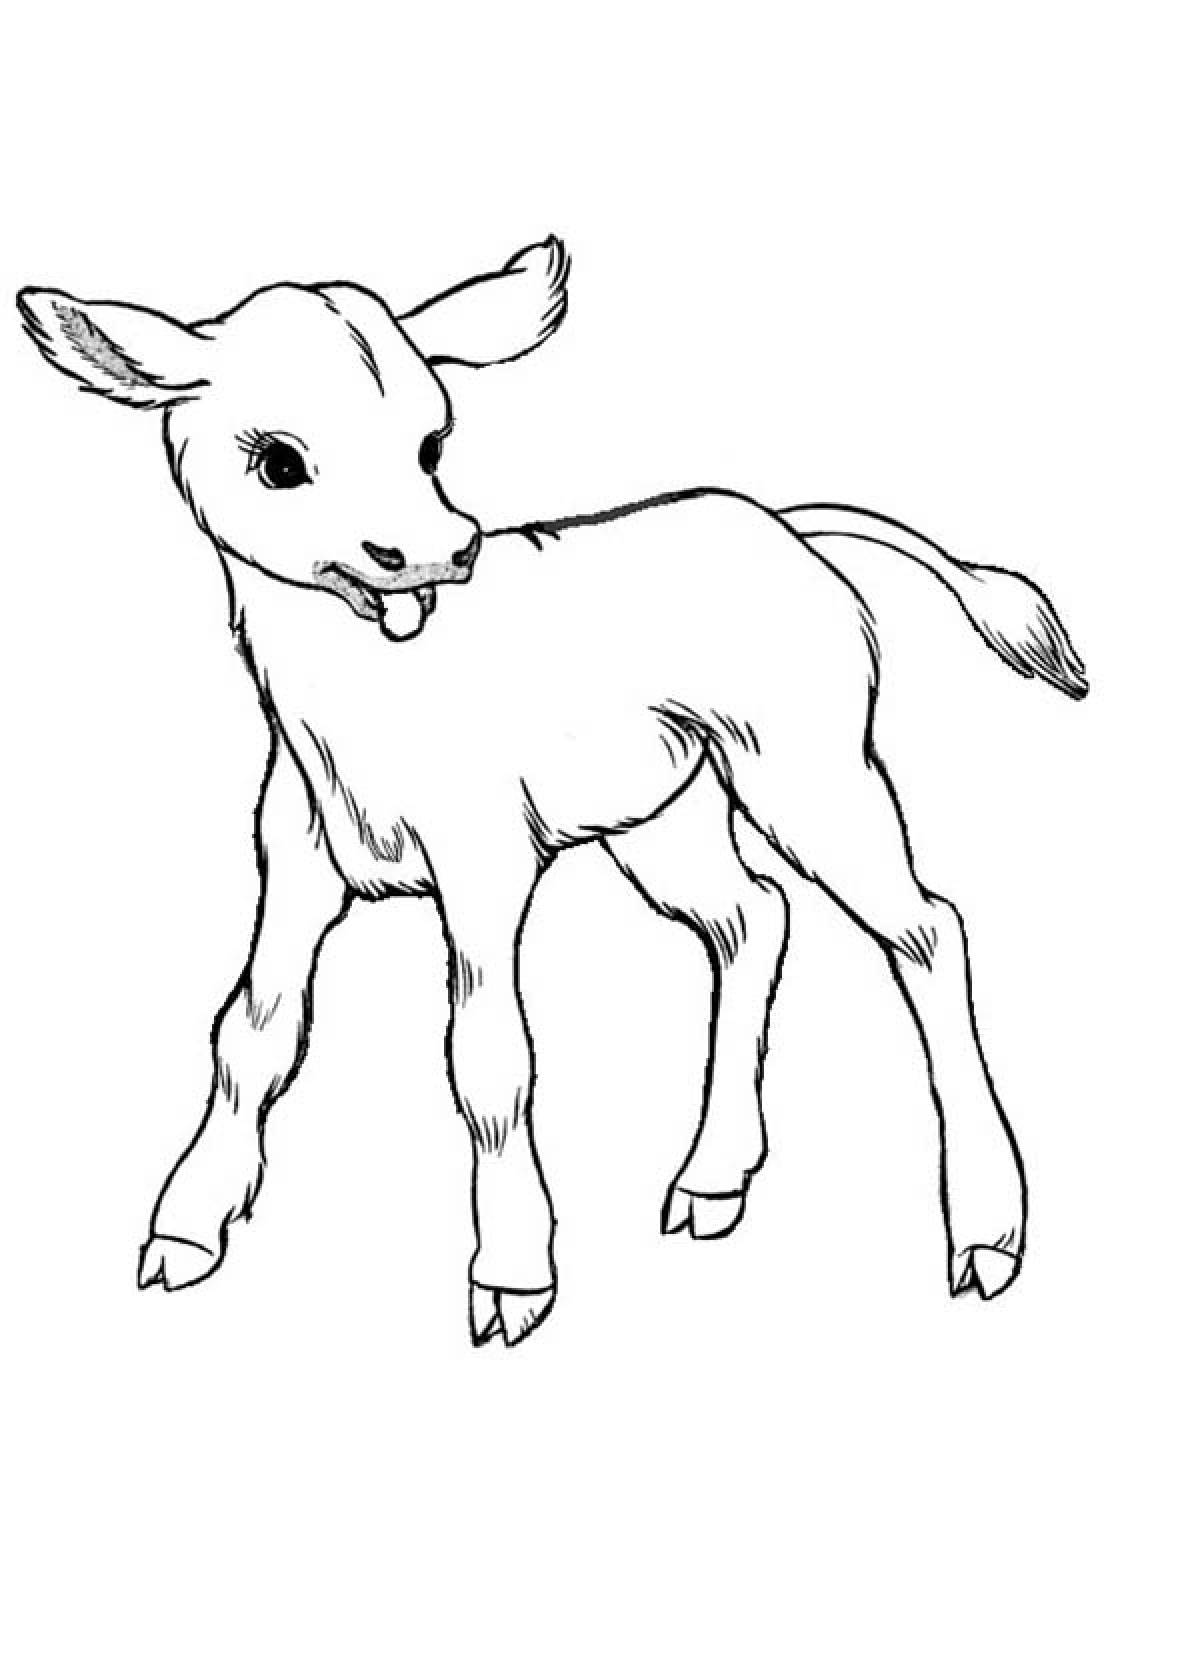 Hornless calf